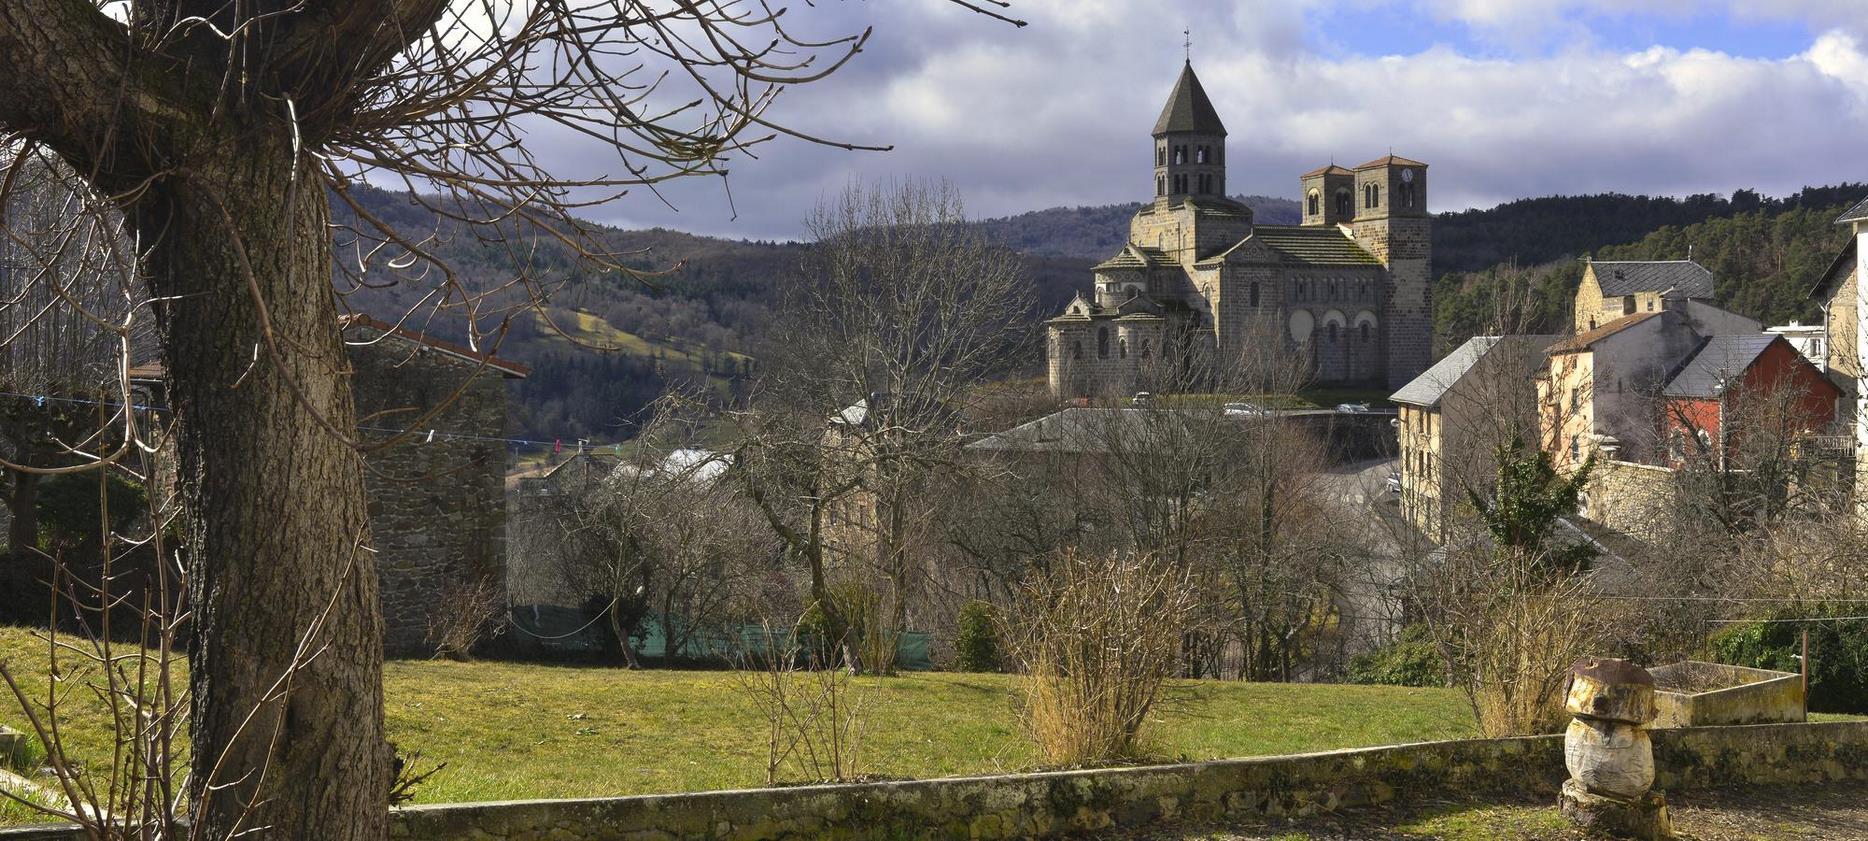 Saint Nectaire - vue sur le village du Puy de Dôme